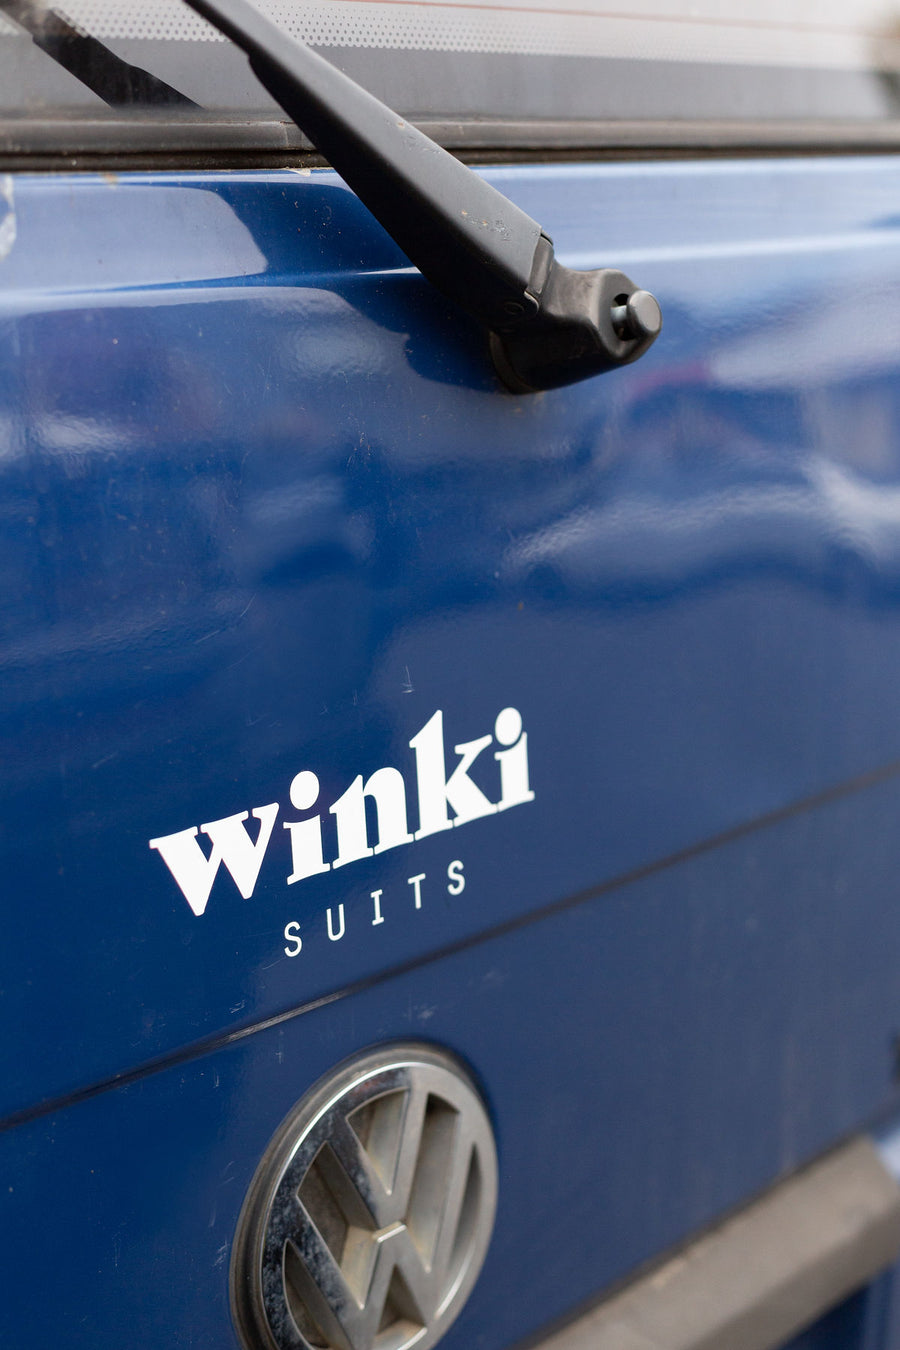 Vinyl Winki Sticker, Ethically Made Surf Accessories, Winki Suits